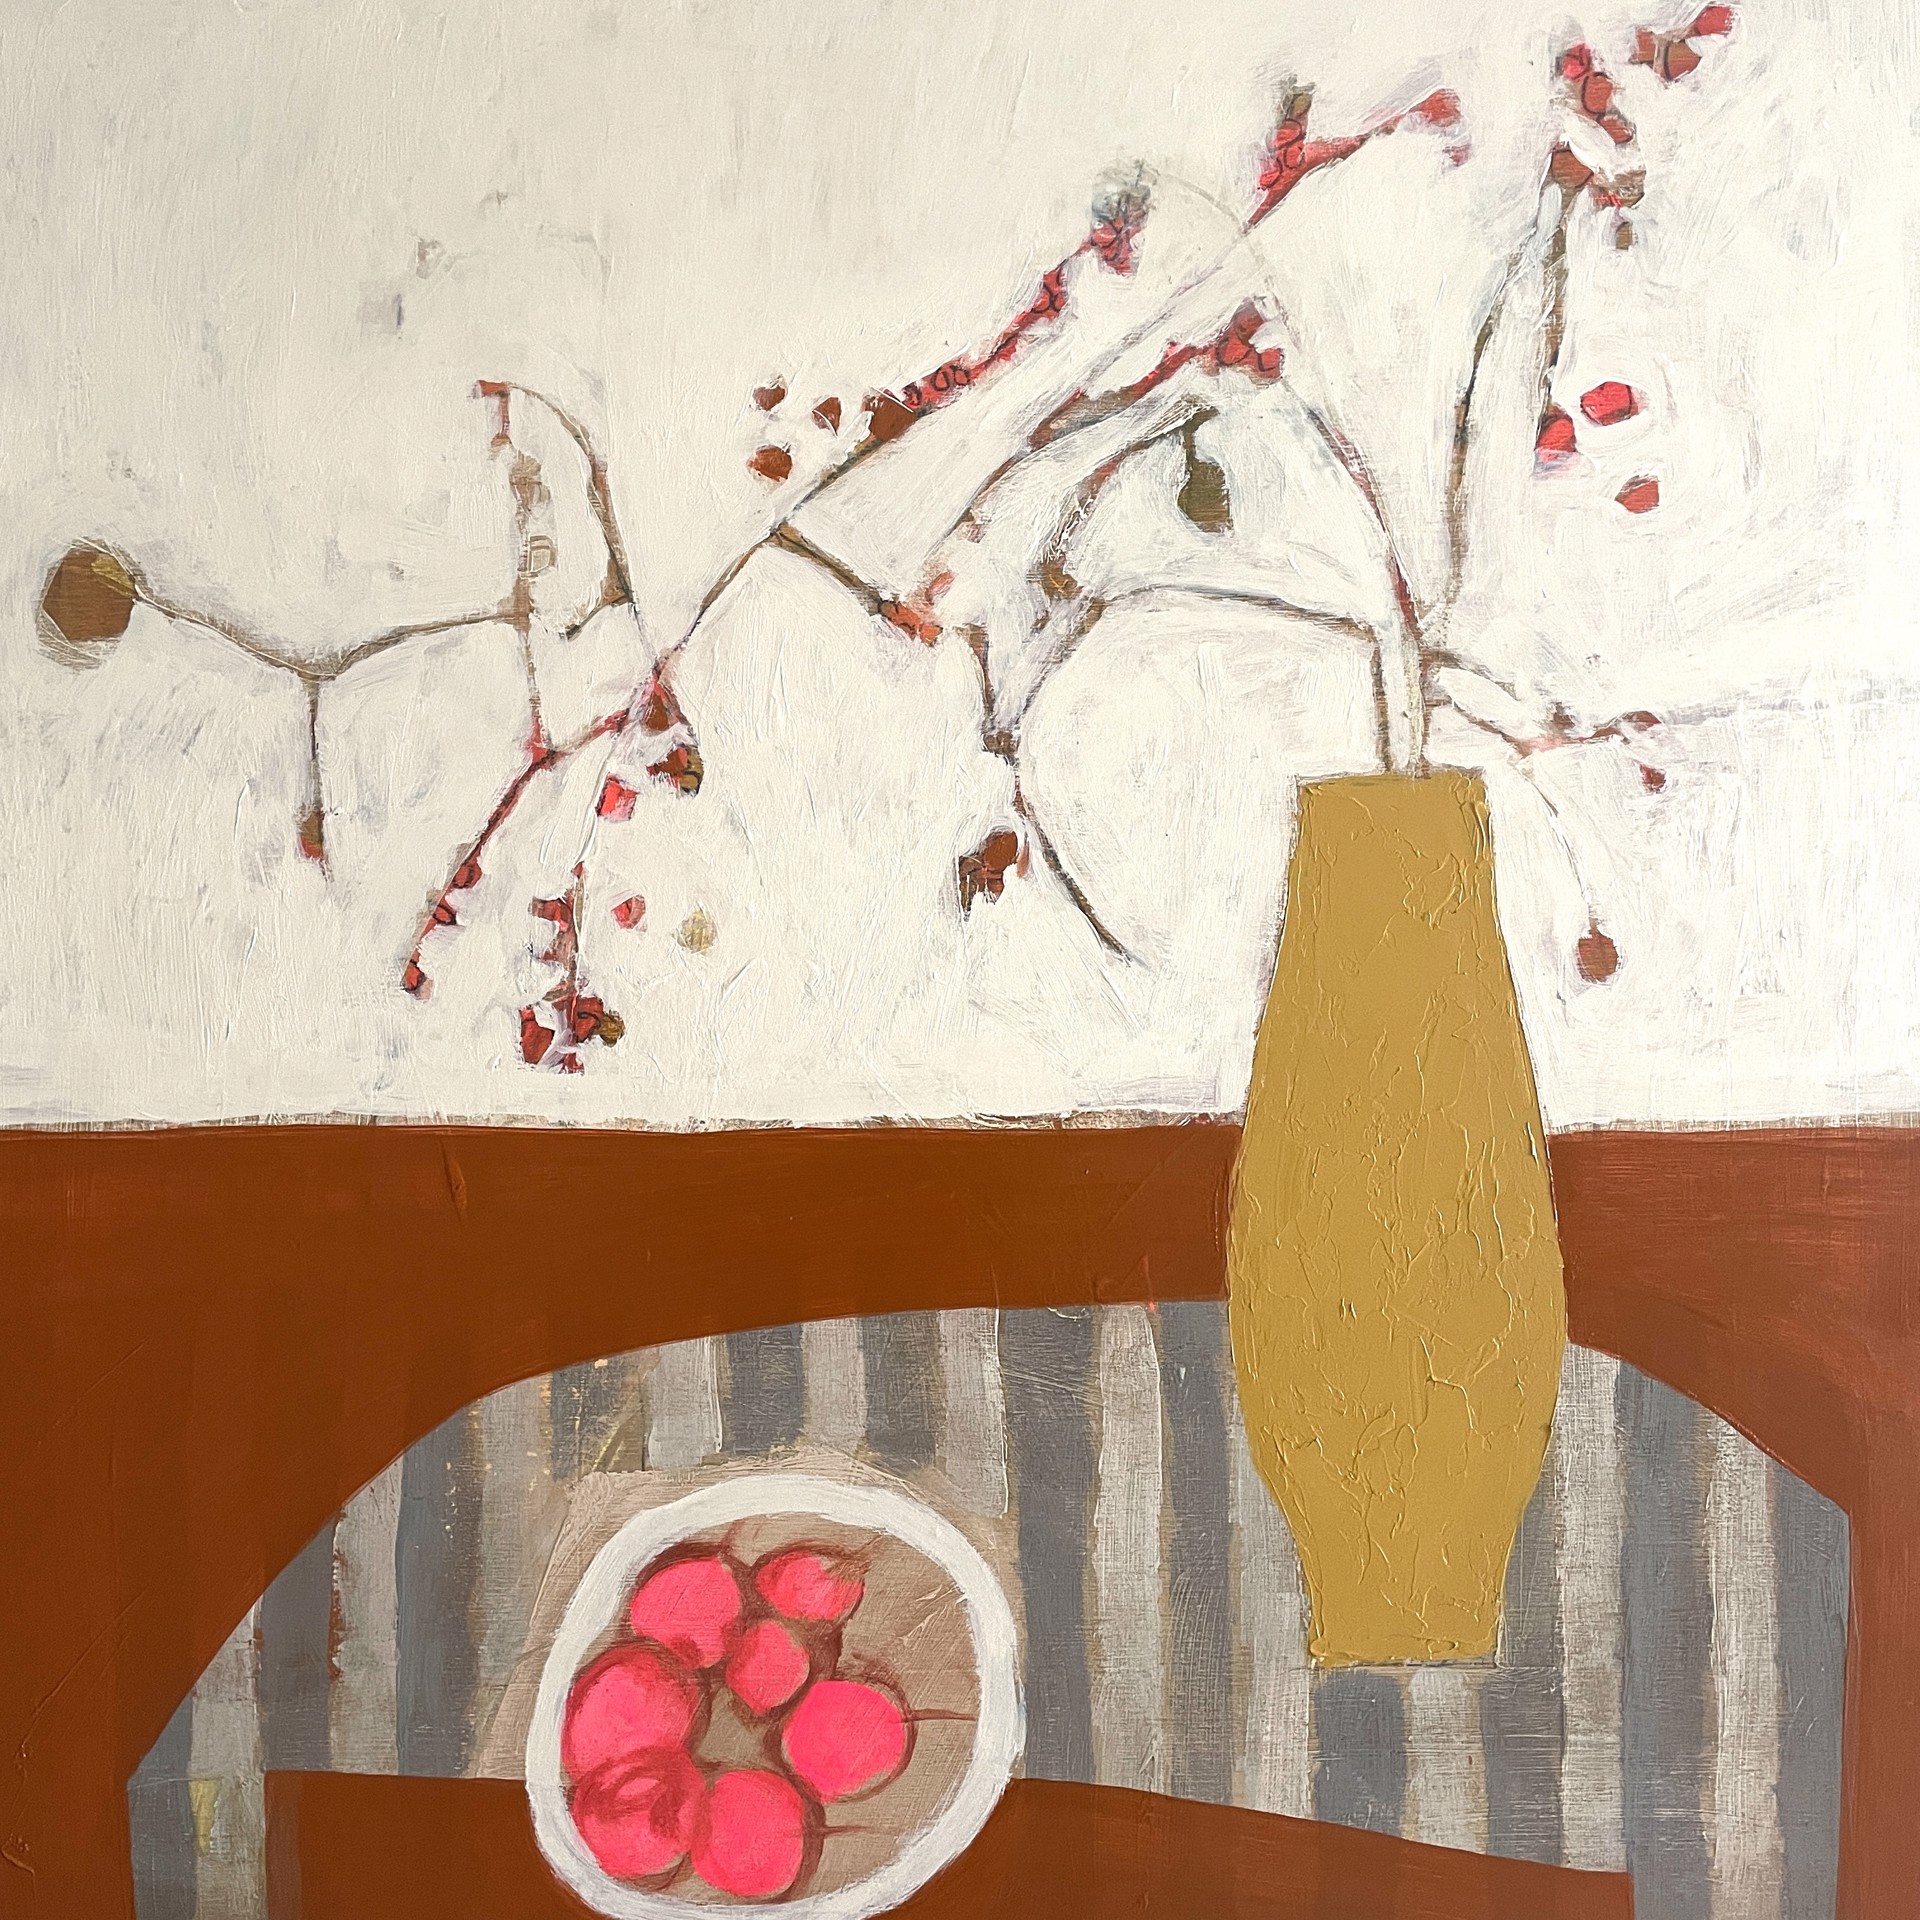 Cherries and Bittersweet on Striped Table by Rachael Van Dyke